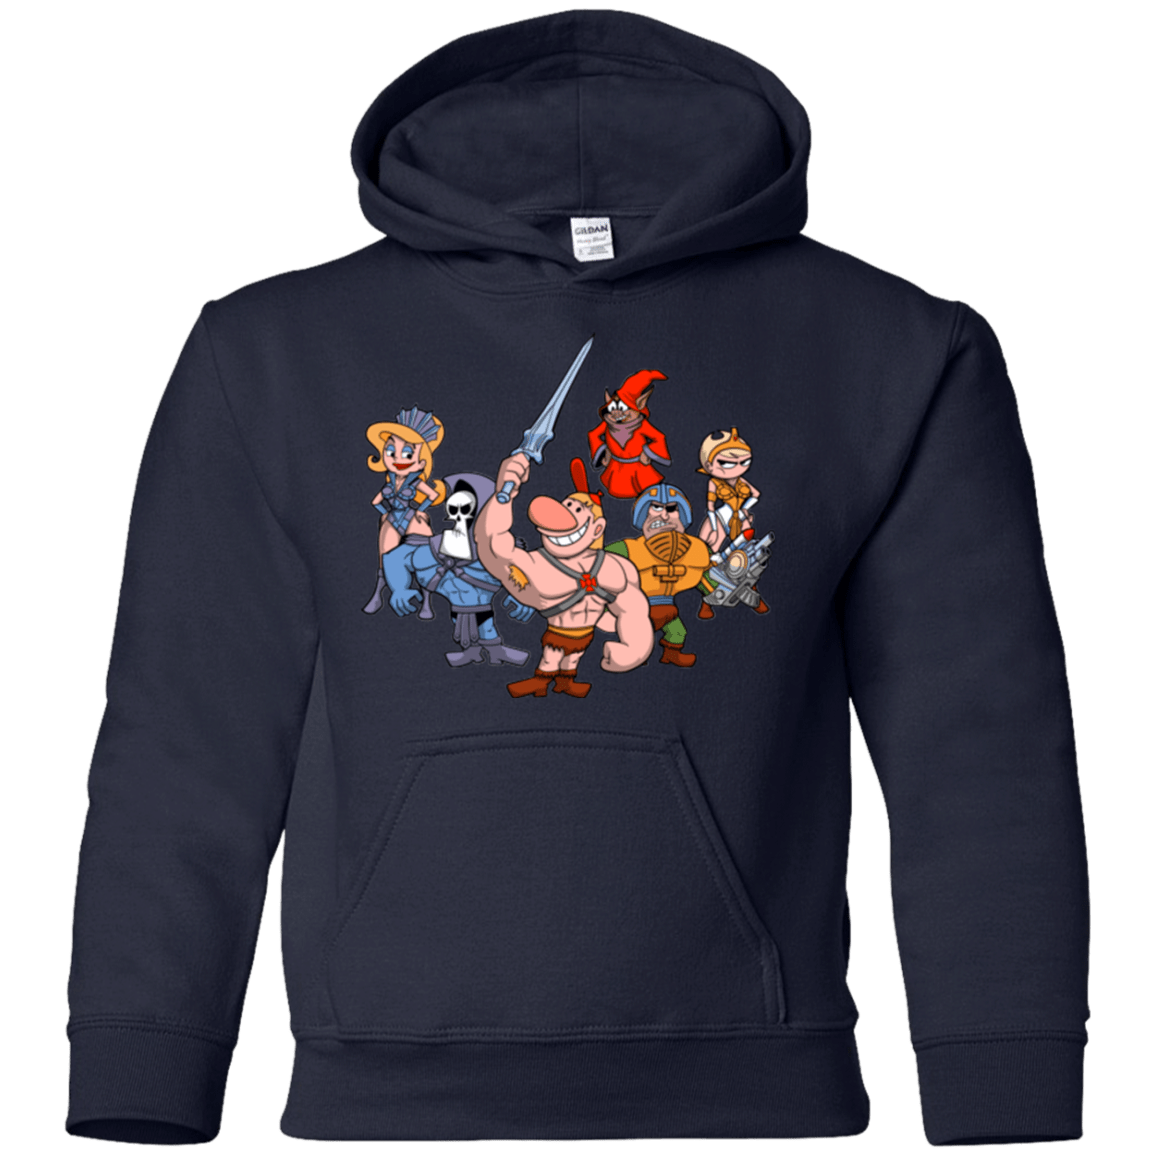 Sweatshirts Navy / YS Masters of the Grimverse Youth Hoodie